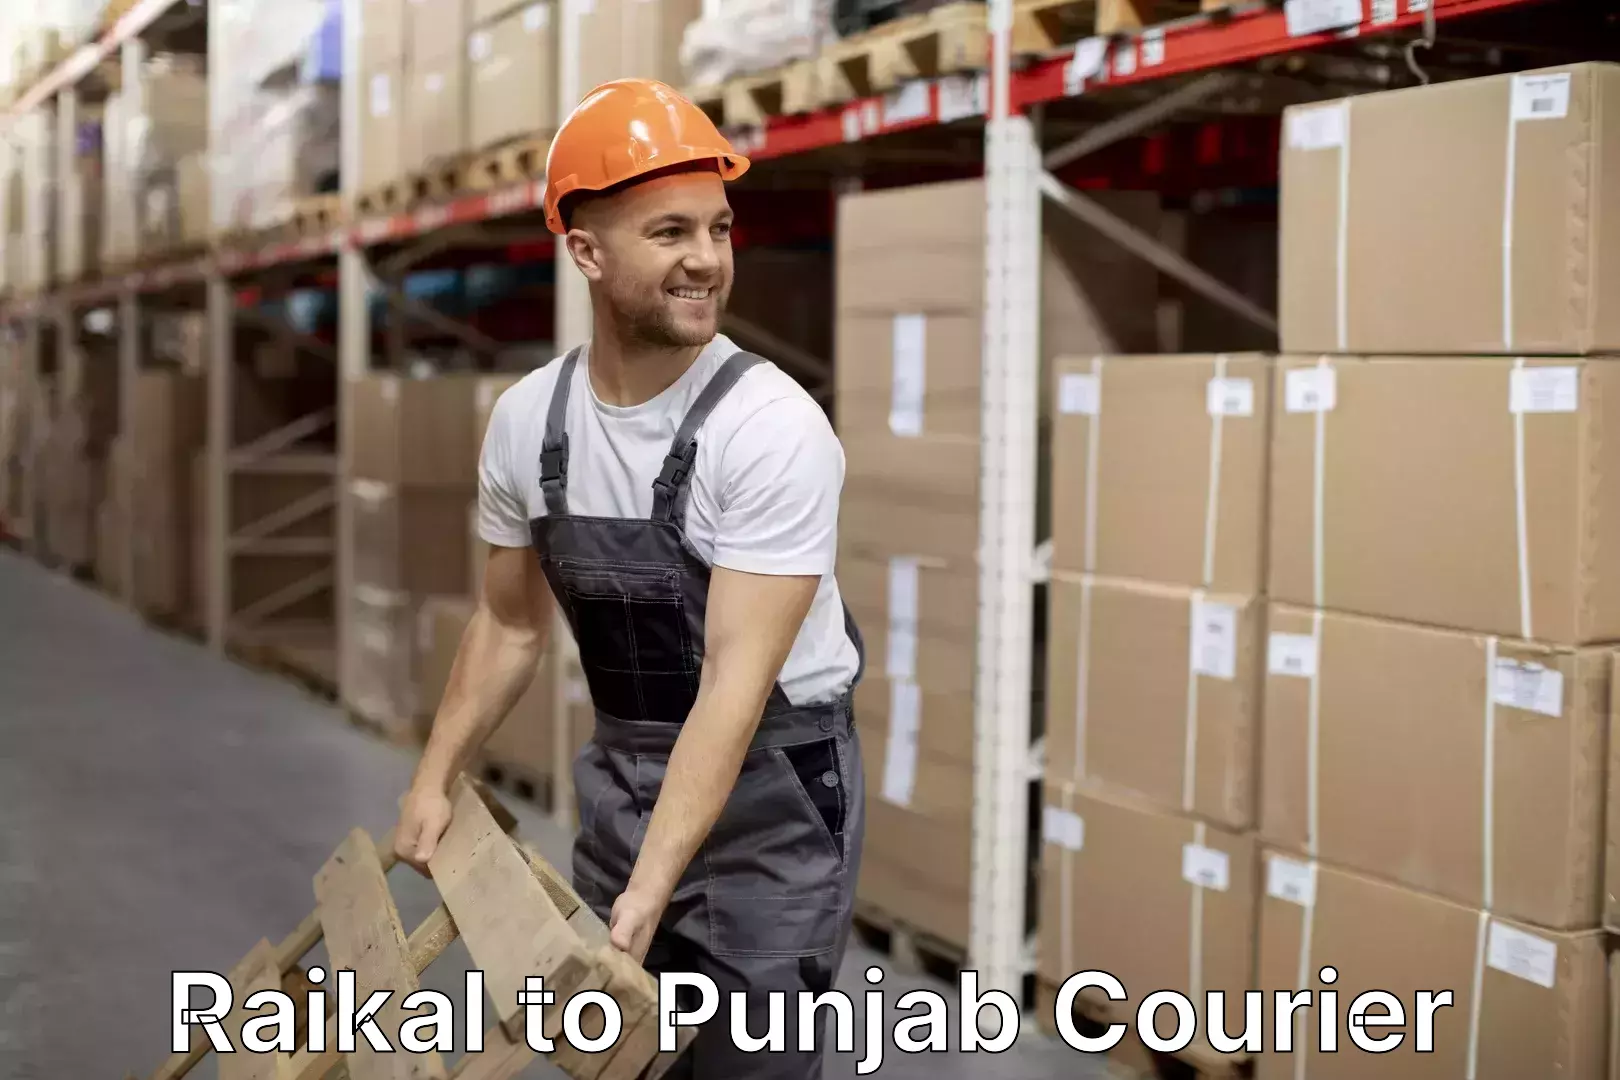 Furniture transport services Raikal to Punjab